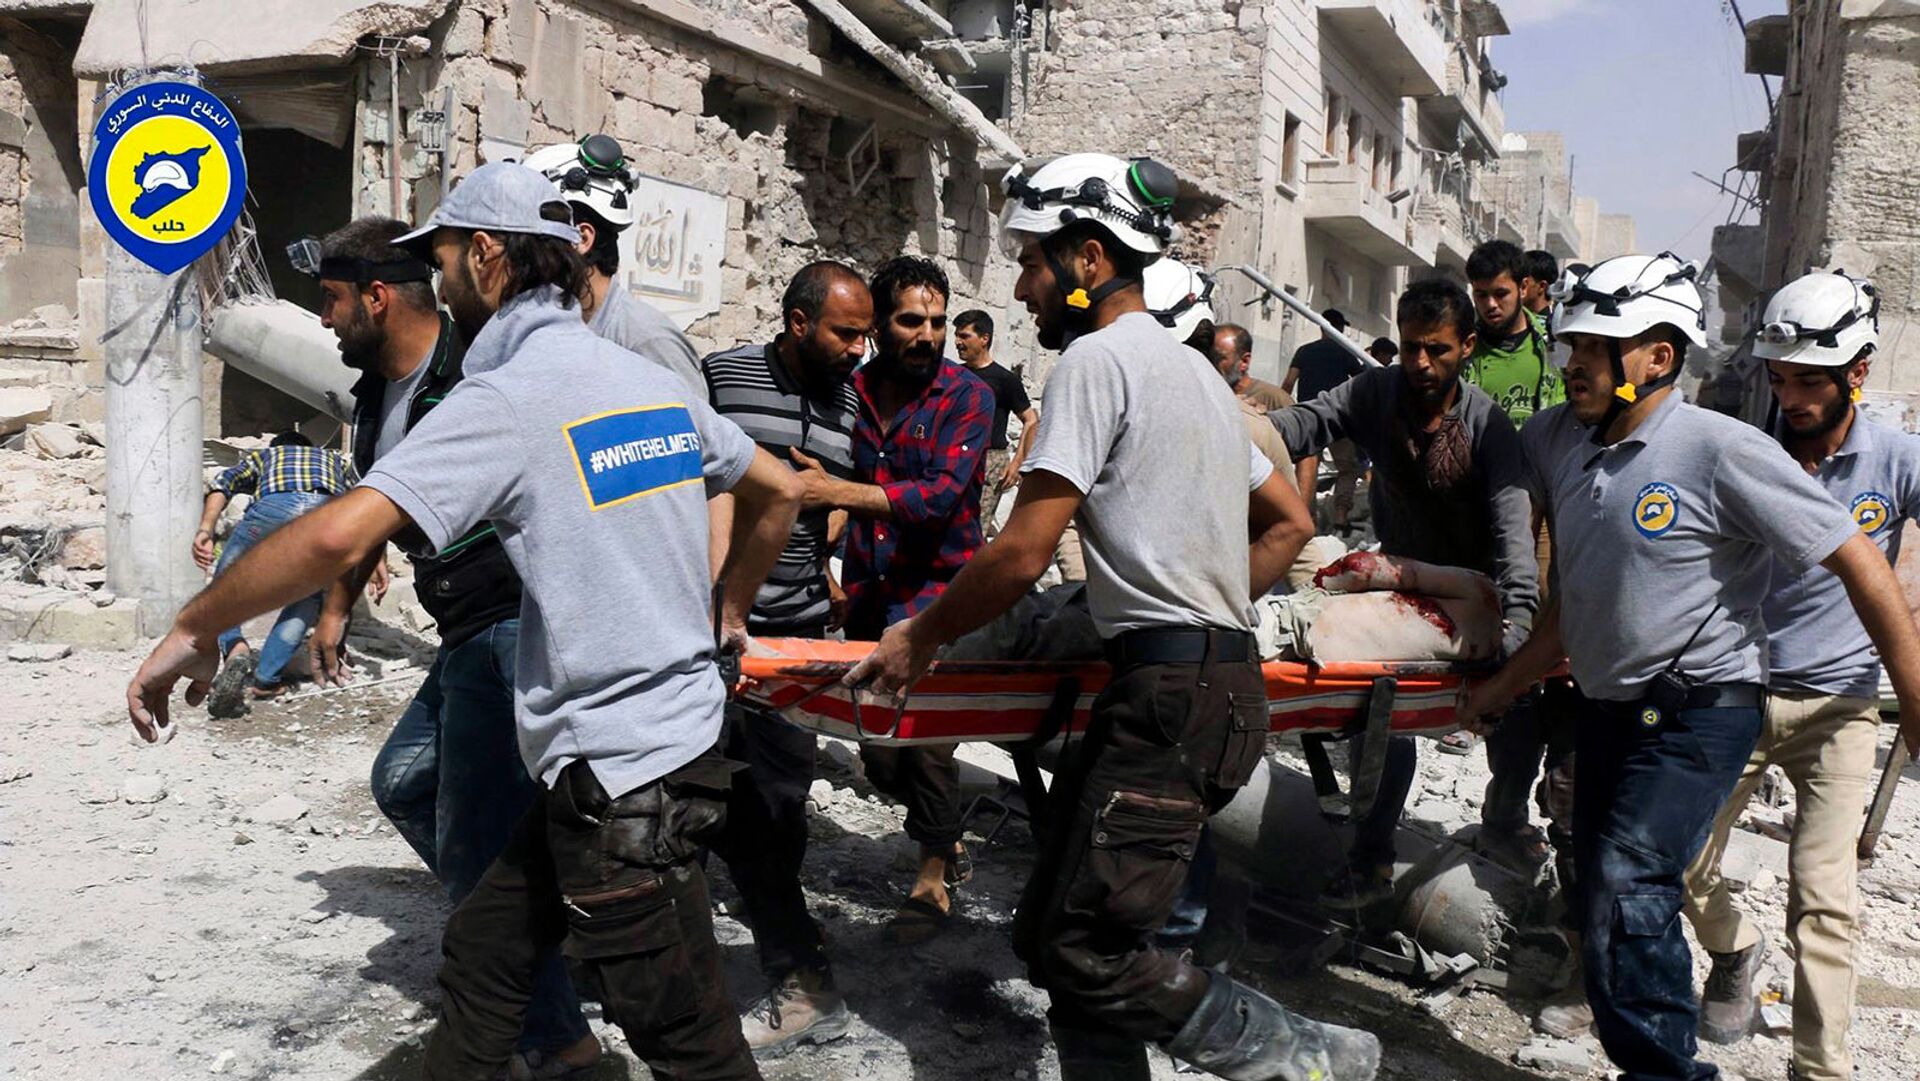 Спасатели перемещают жертву с места авиаударов в районе Аль-Сахур повстанческой части восточного Алеппо (21 сентября 2016). Сирия - Sputnik Армения, 1920, 25.03.2022